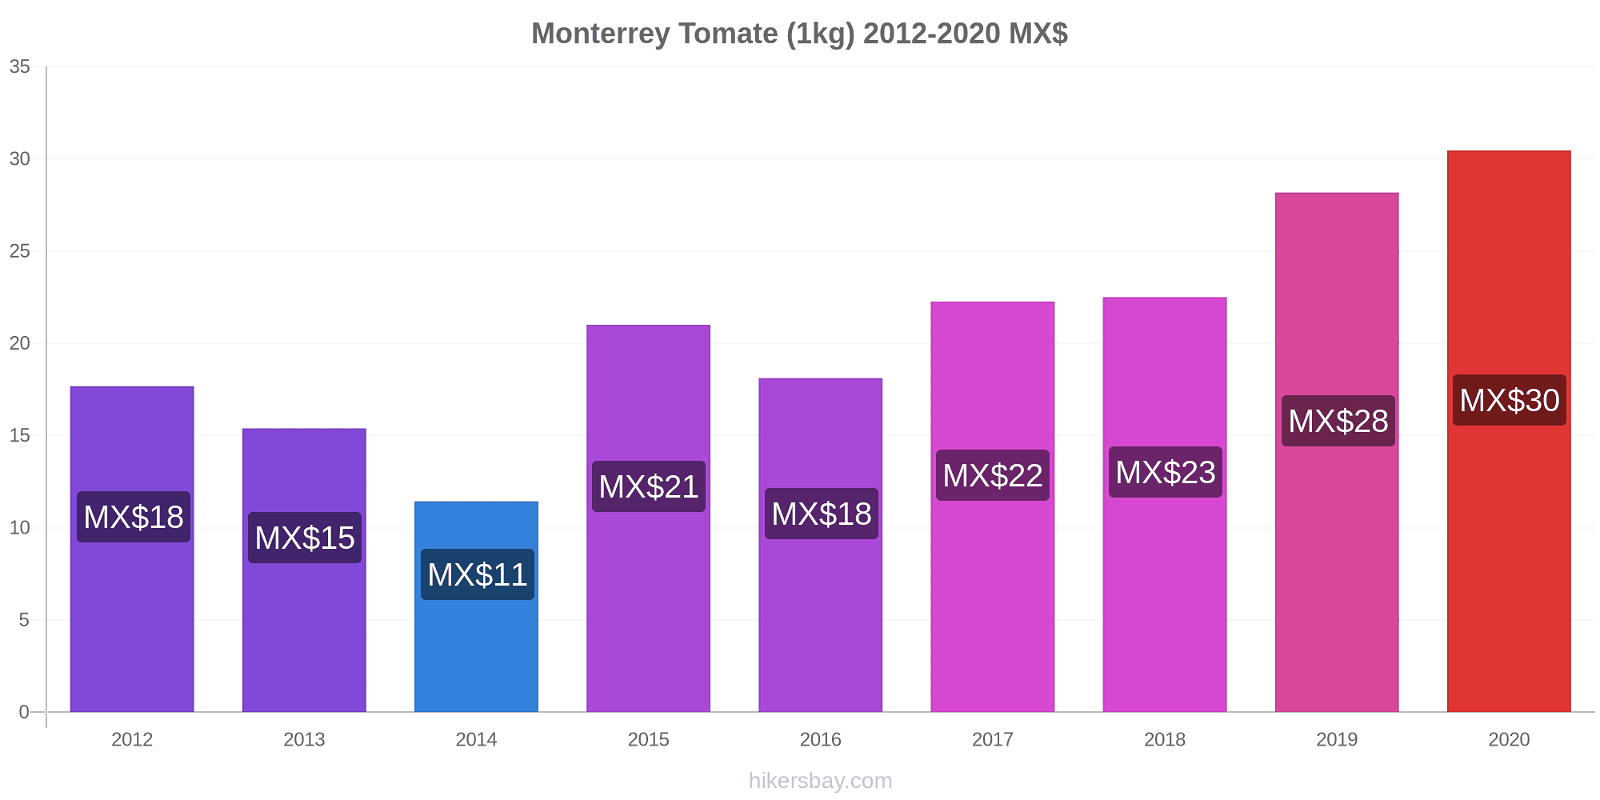 Monterrey changements de prix Tomate (1kg) hikersbay.com